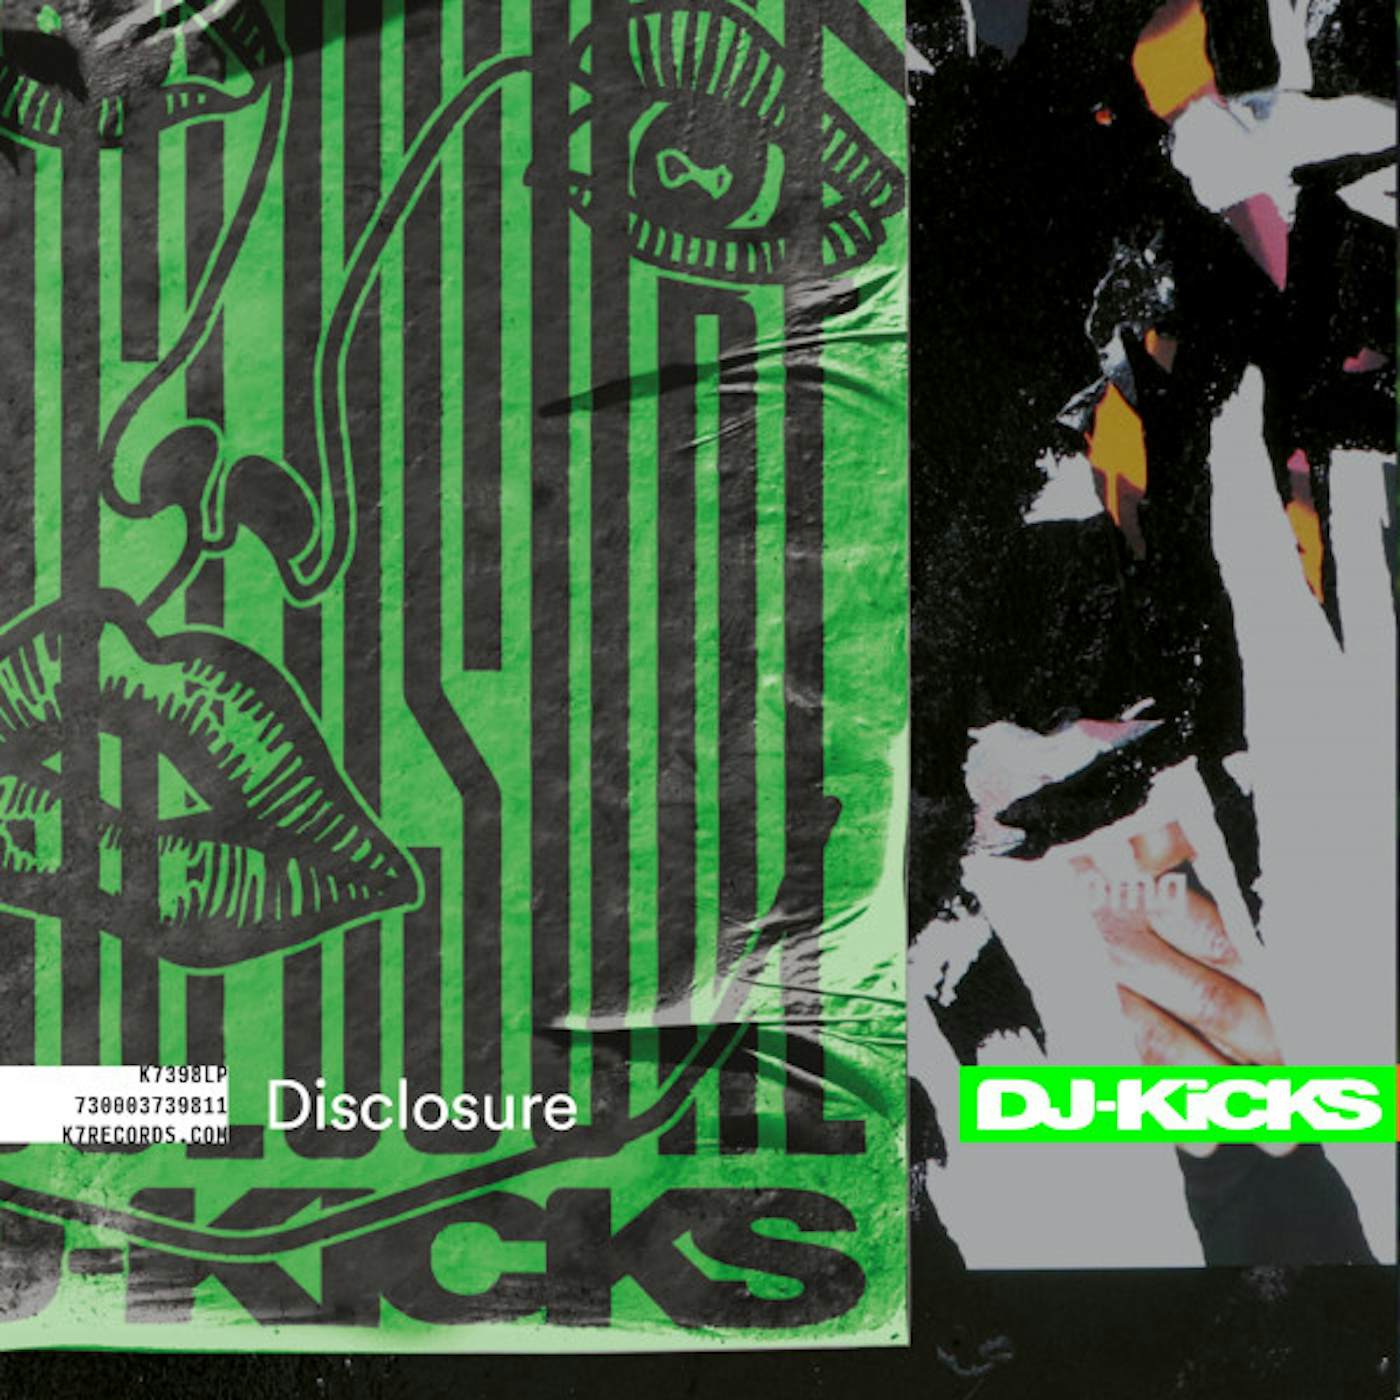 DISCLOSURE DJ-KICKS Vinyl Record